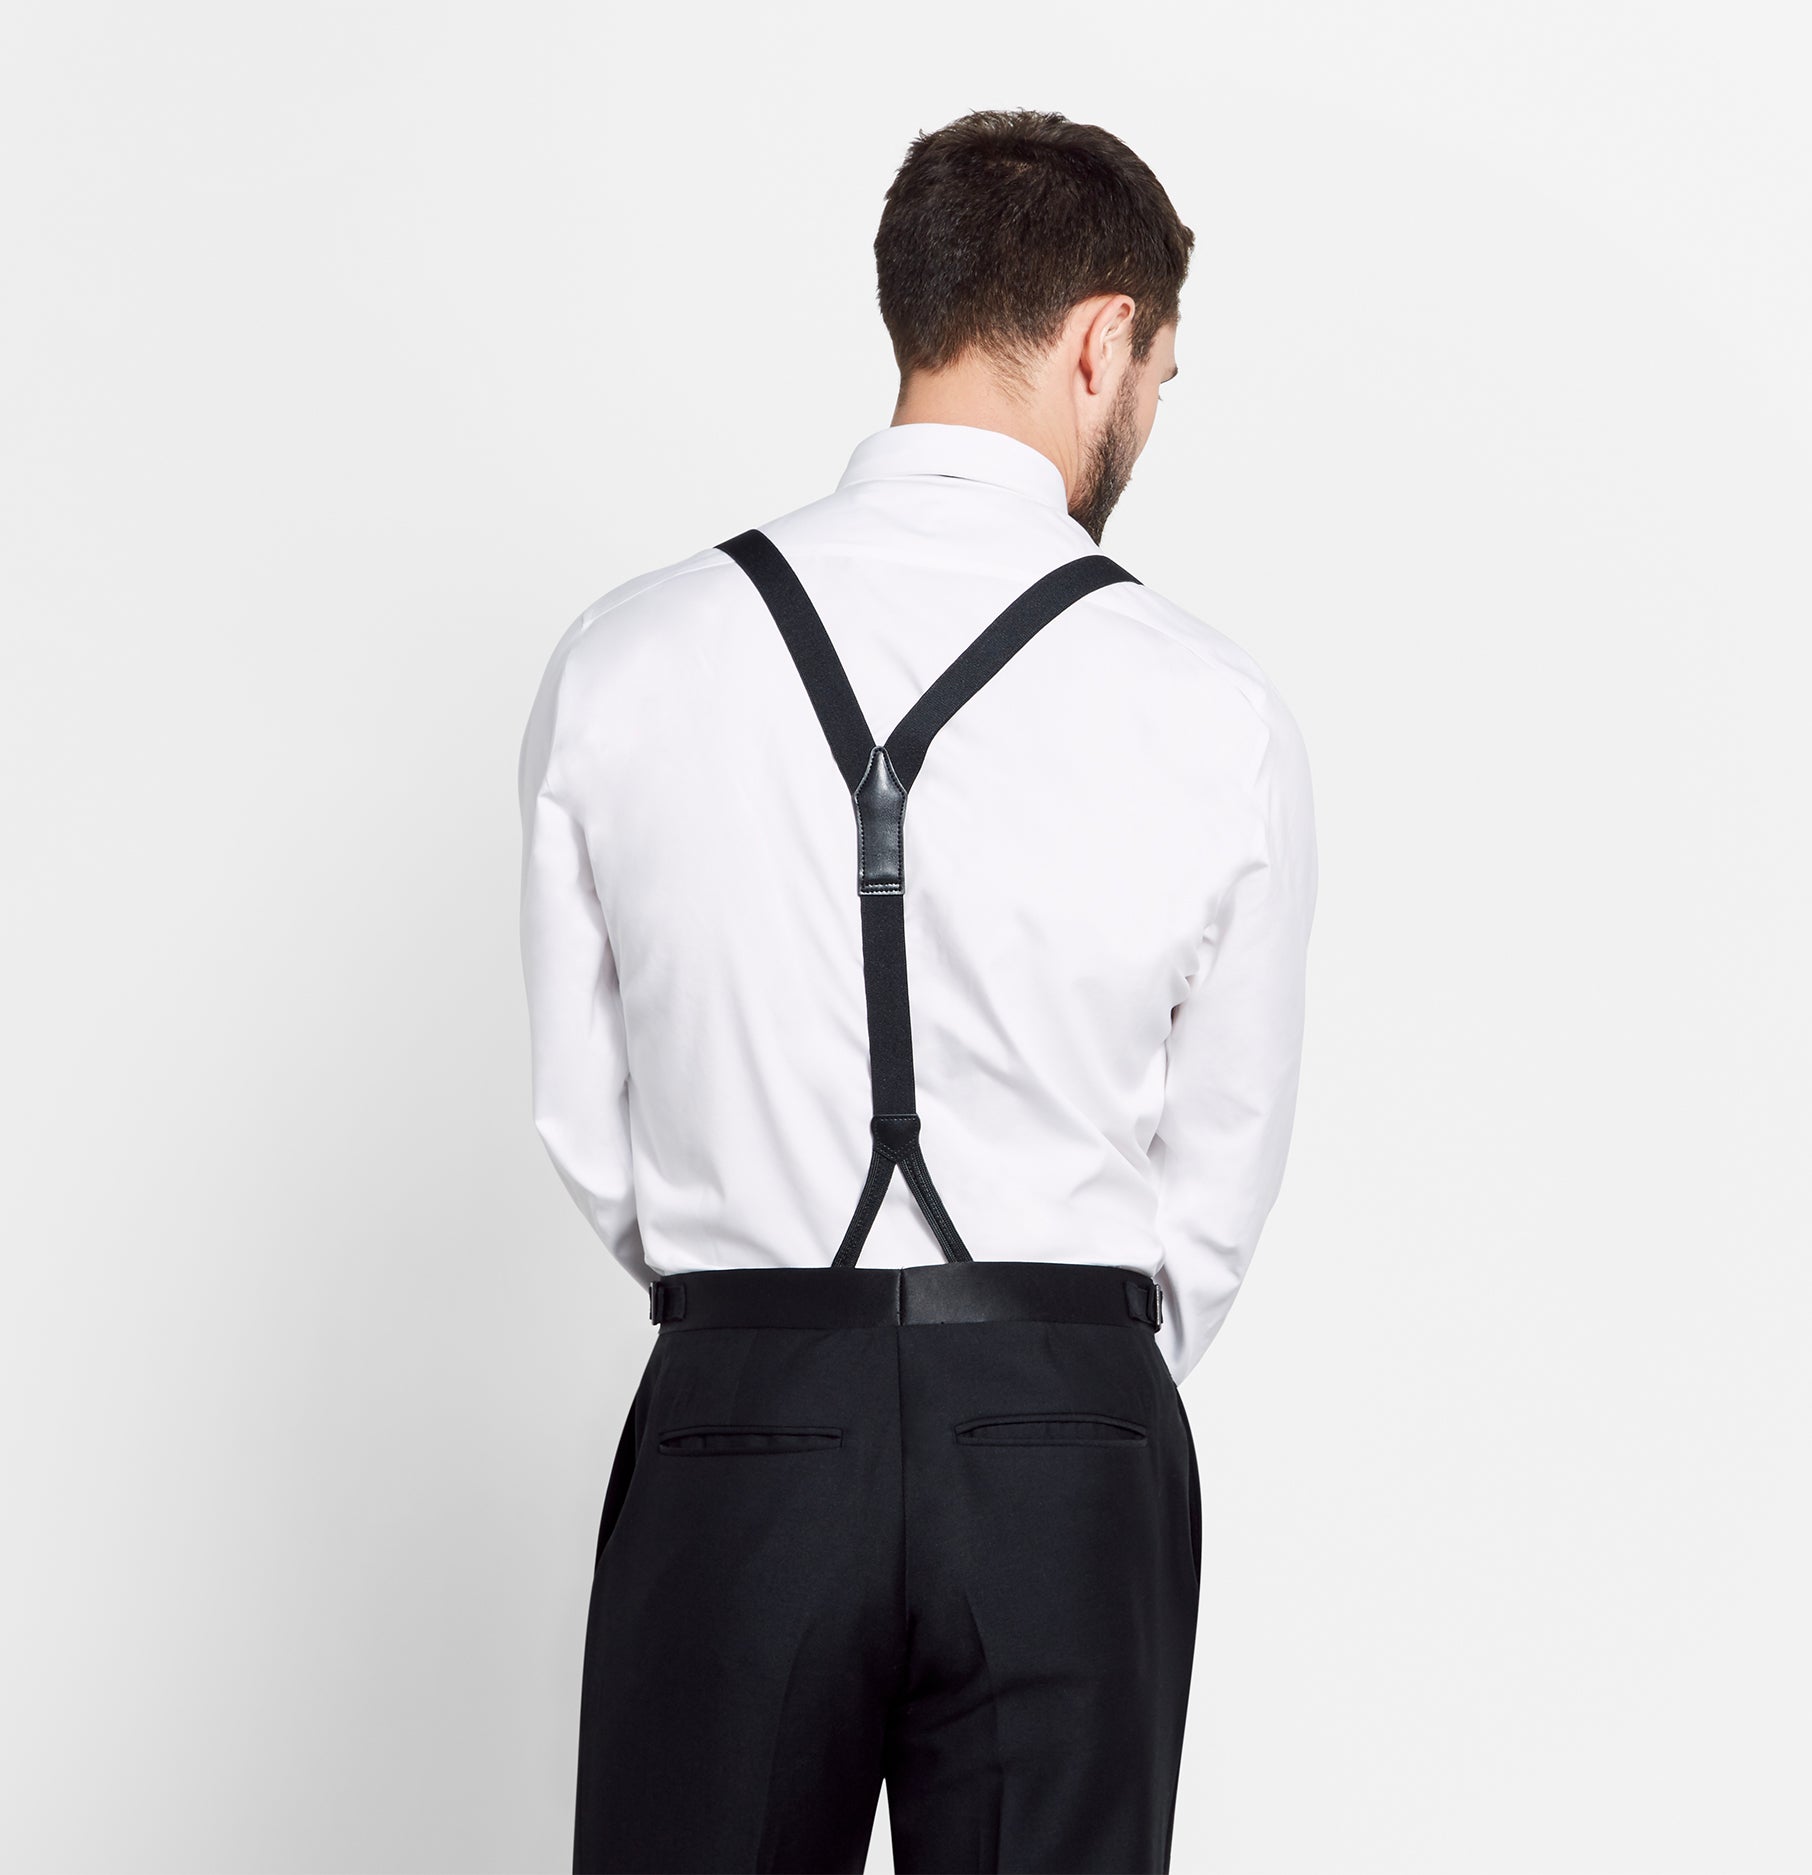 SUSPBBLK Button Suspender - Black - BB Work Clothes - BIG BILL